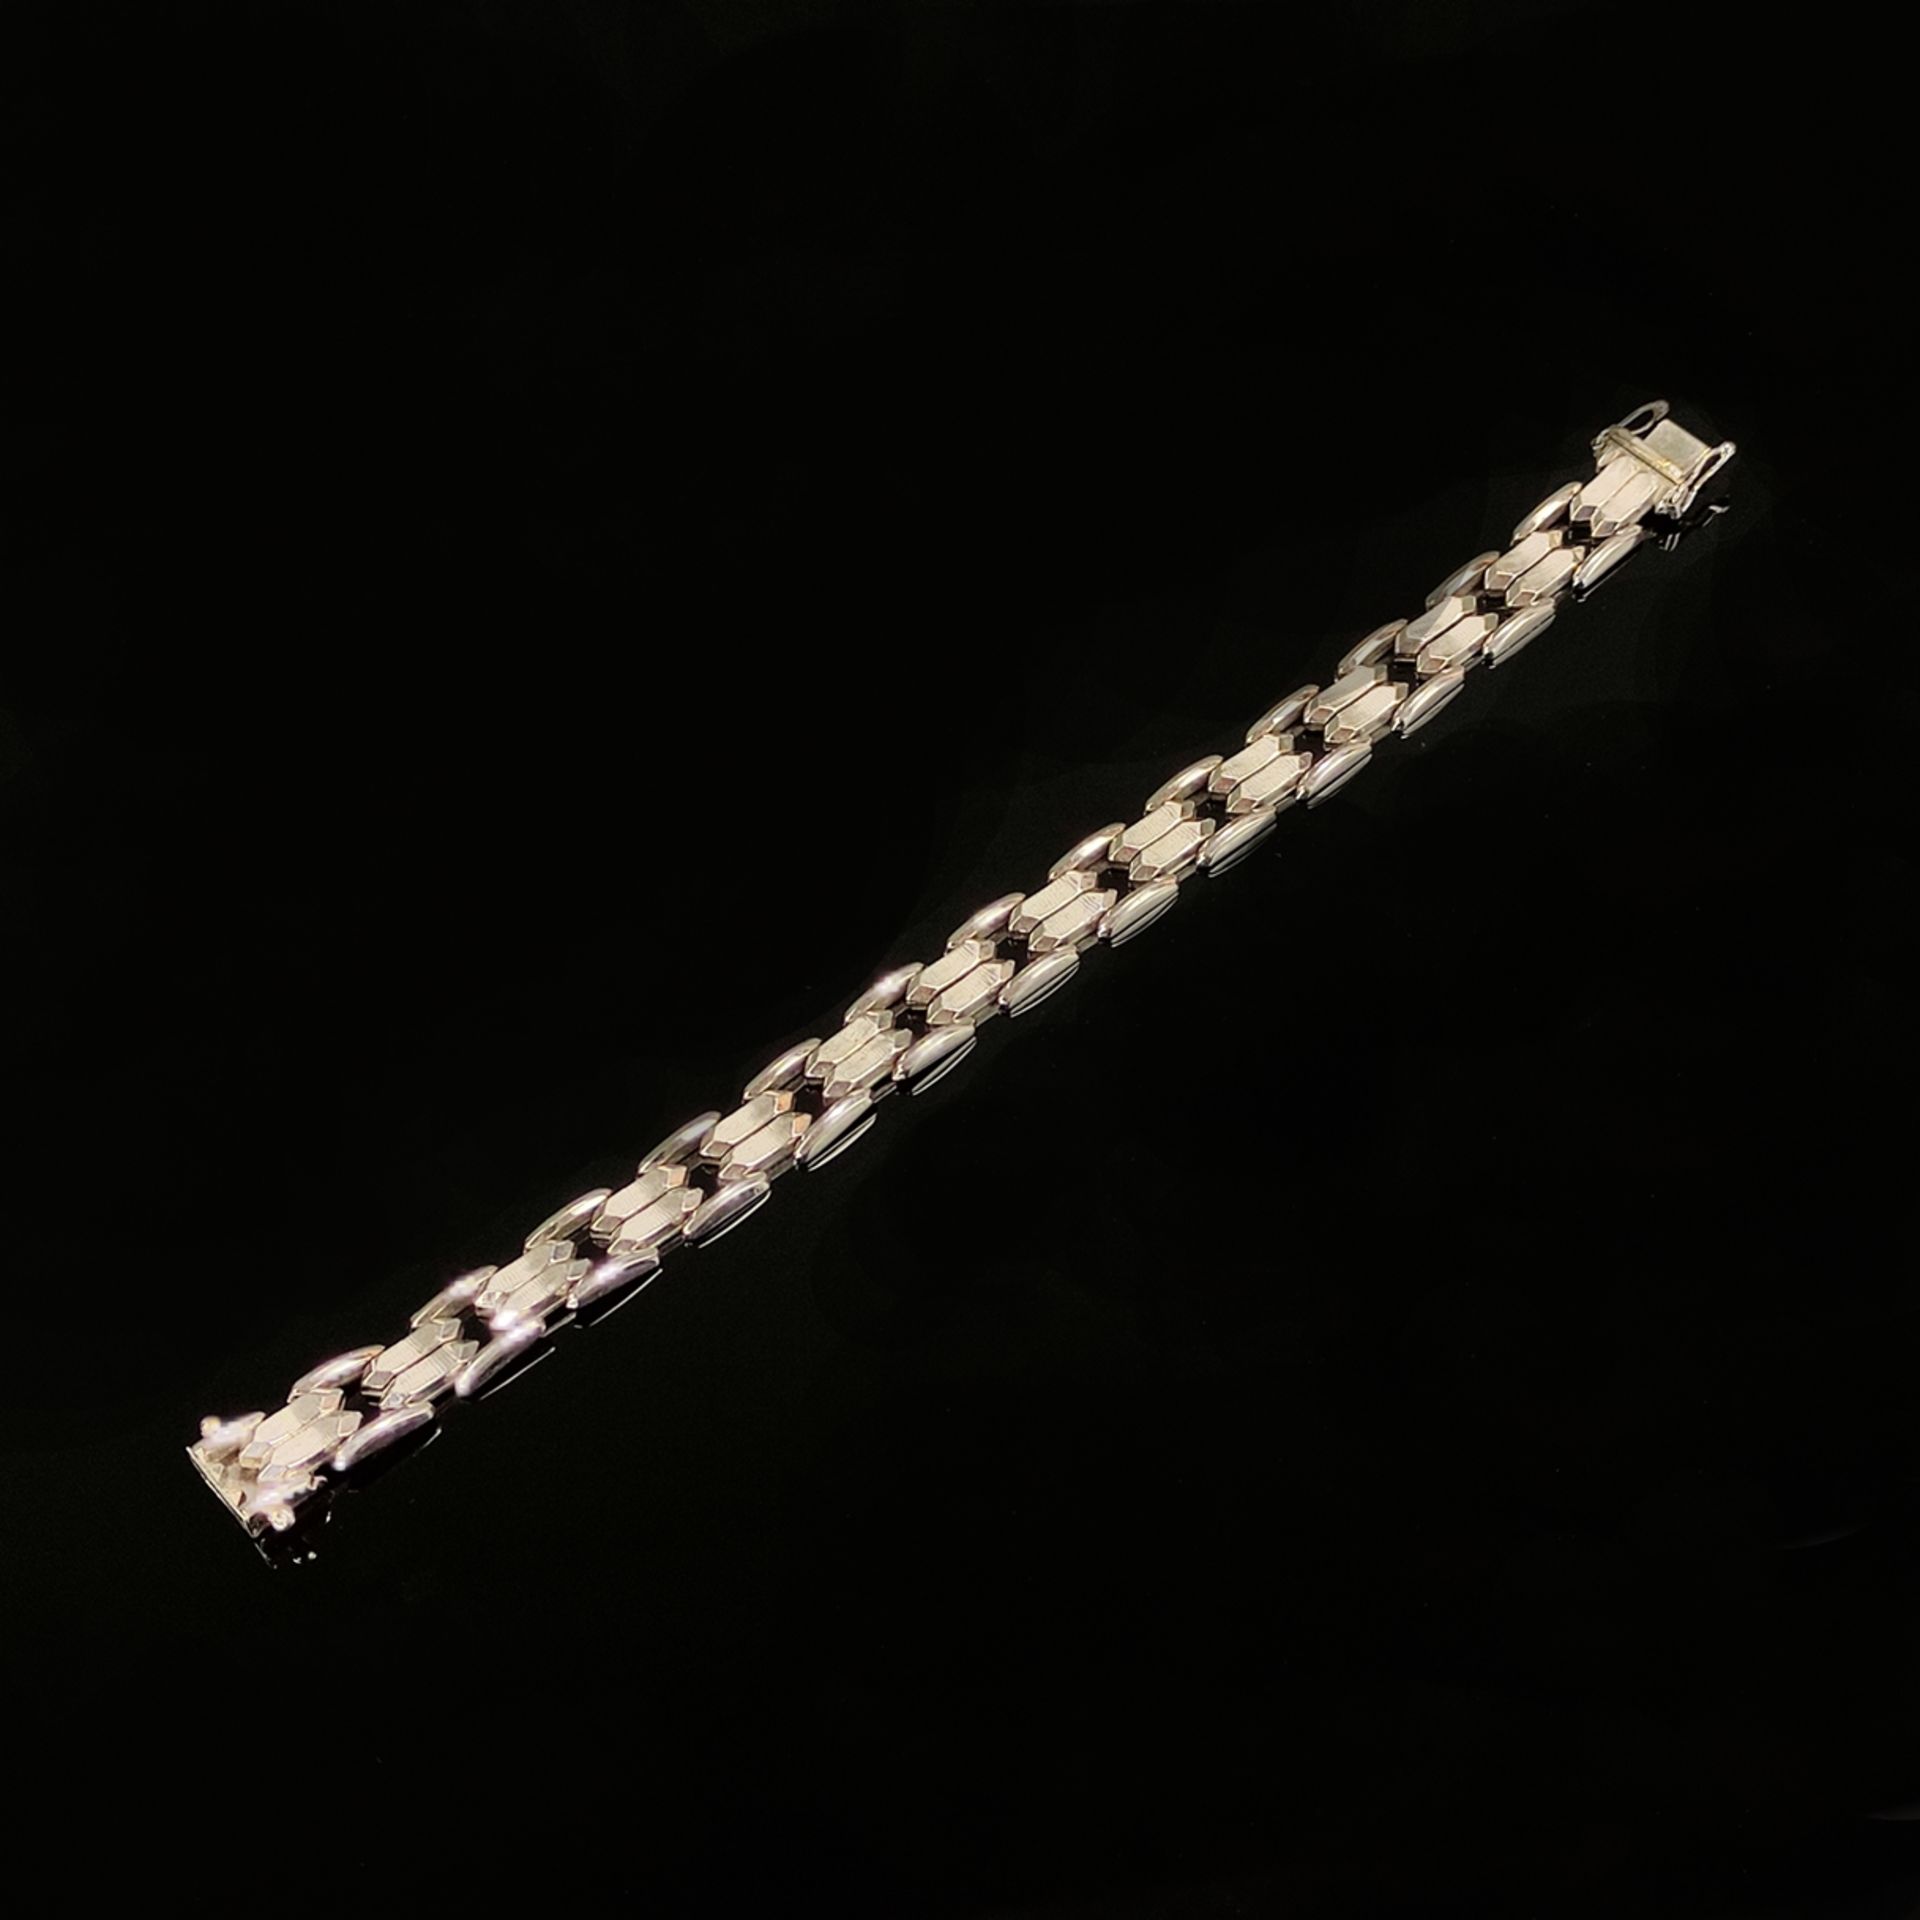 Armband, 585/14K Weißgold (punziert), 22,9g, gefertigt aus einzelnen flexiblen Gliedern, Steckschli - Bild 2 aus 3